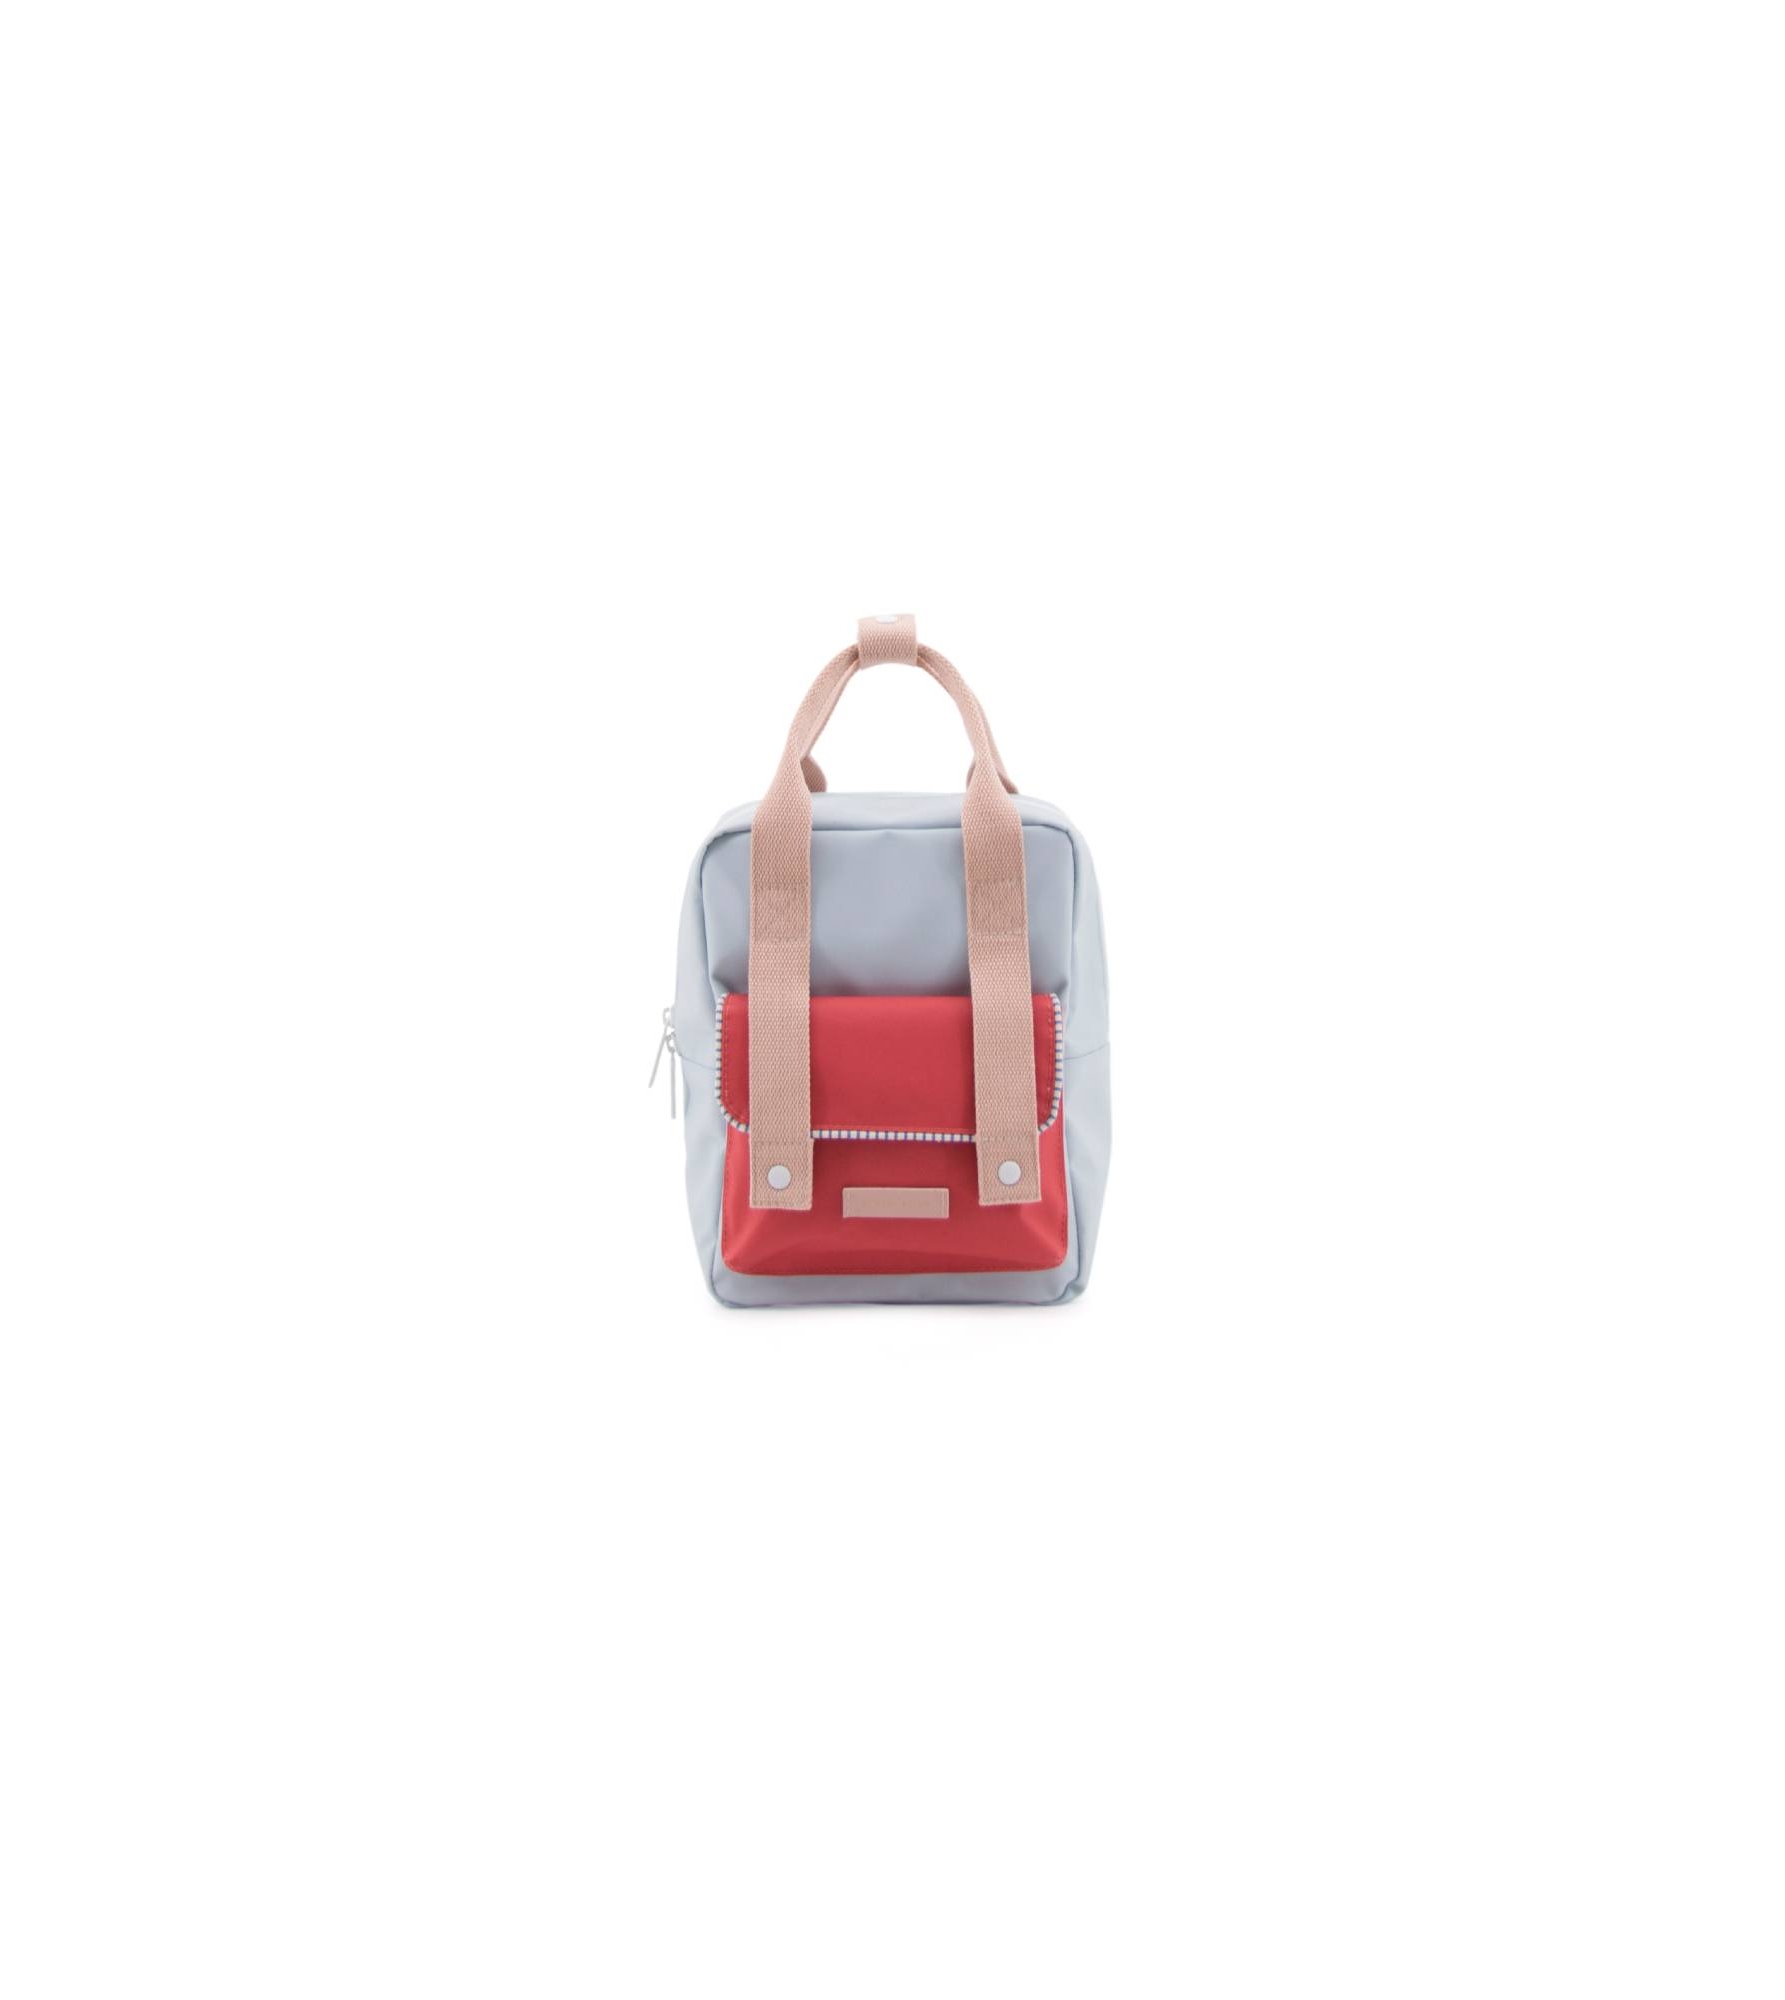 1801414 - Sticky Lemon - envelope deluxe - backpack small - Mendi's pink, agatha blue, elevator  (2)_edit (1).jpg